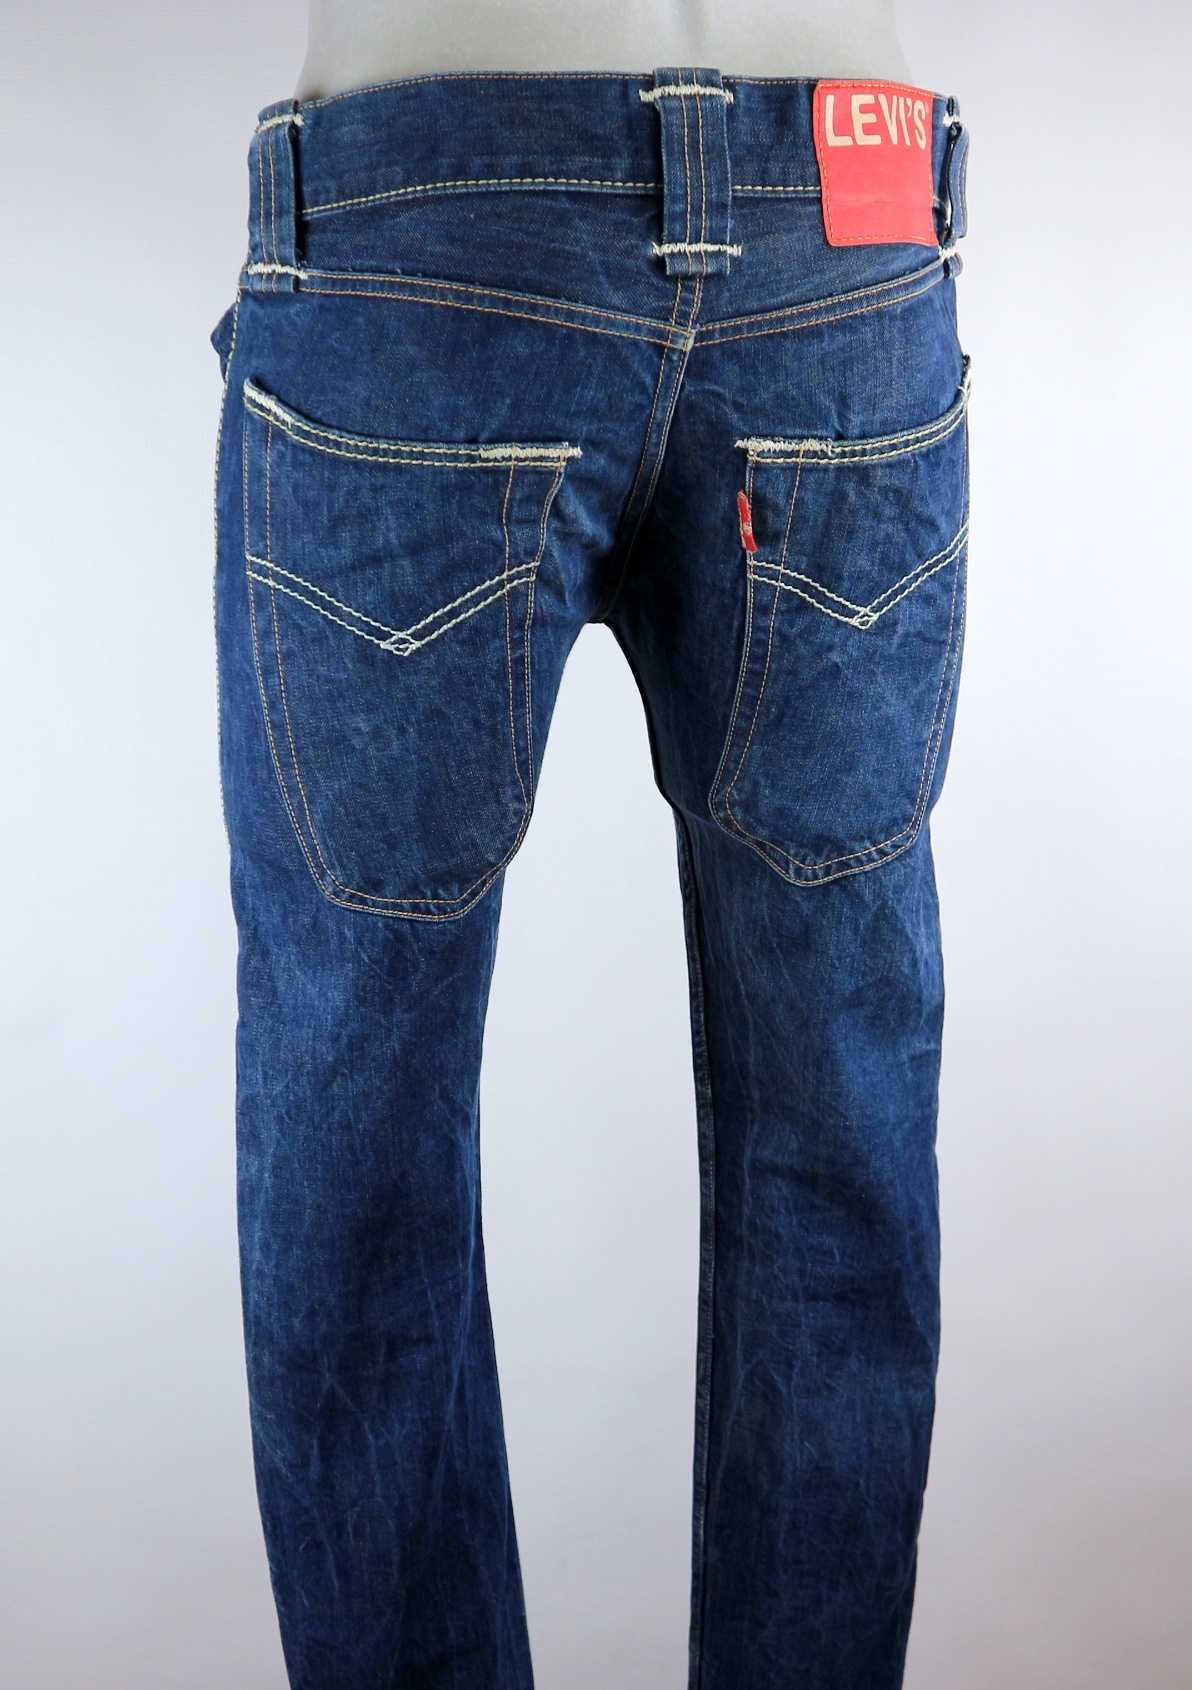 Levis 917 Skinny retro spodnie jeansy W28 L32 pas 2 x 41 cm